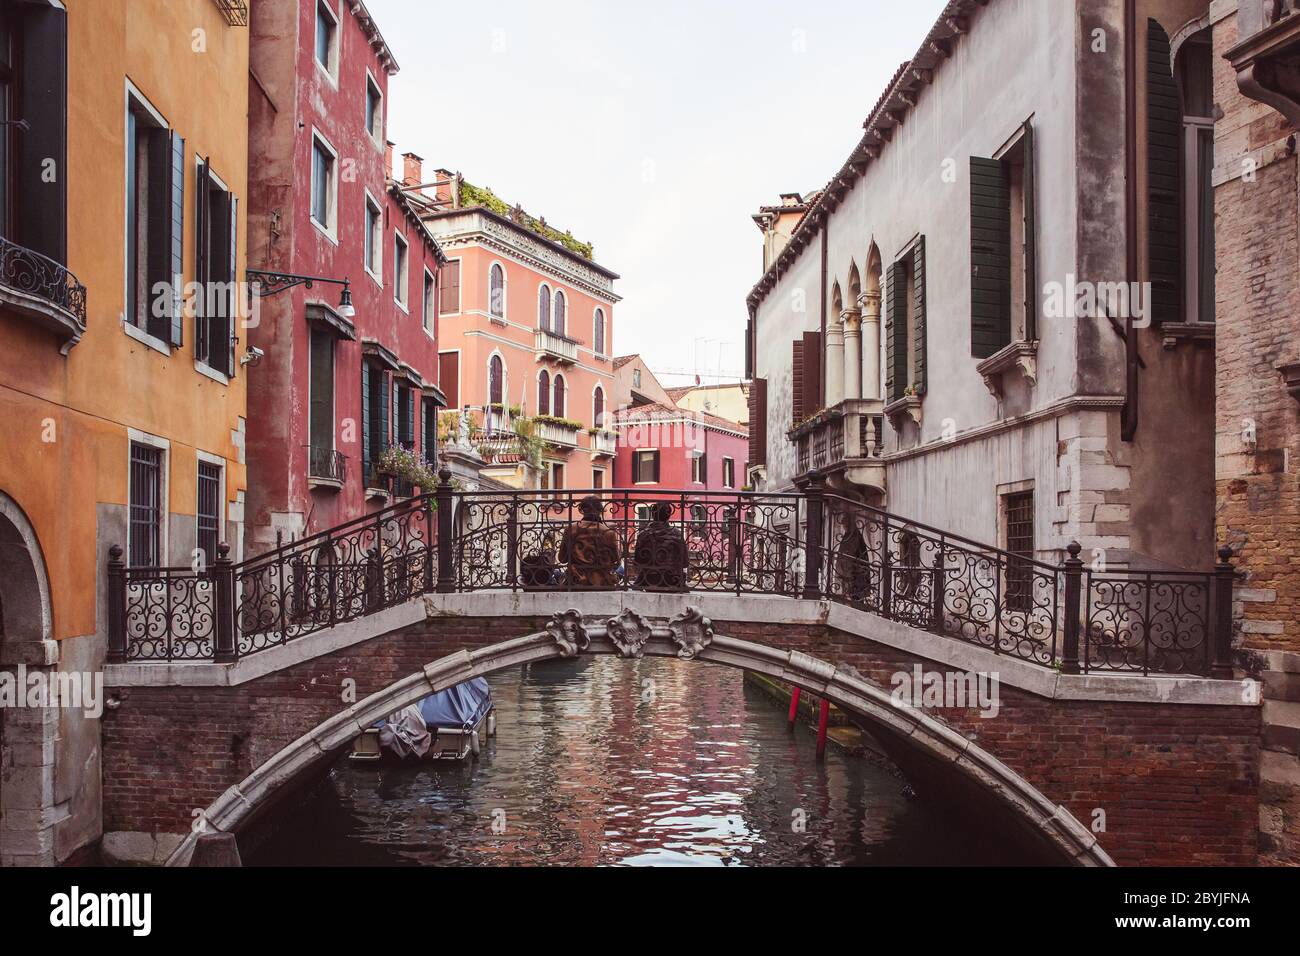 Deux amoureux assis côte à côte sur un pont au-dessus d'un canal parmi des bâtiments roses à Venise, Italie Banque D'Images